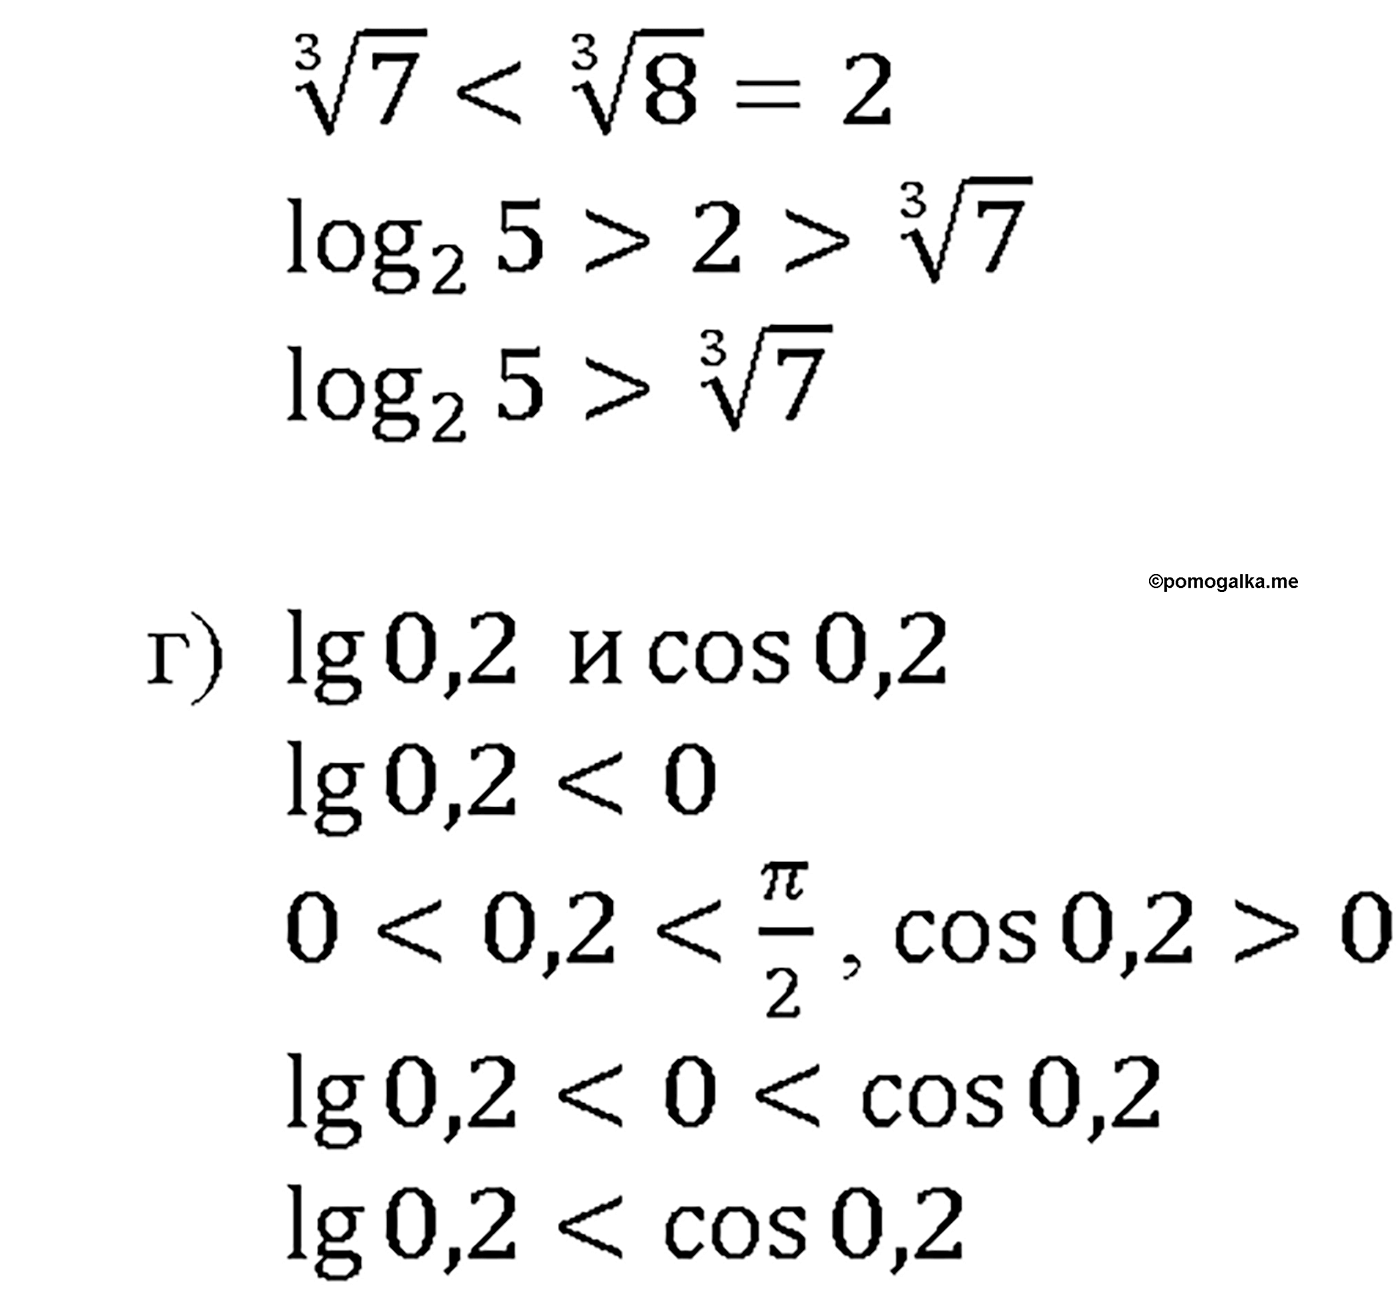 задача №42.6 алгебра 10-11 класс Мордкович